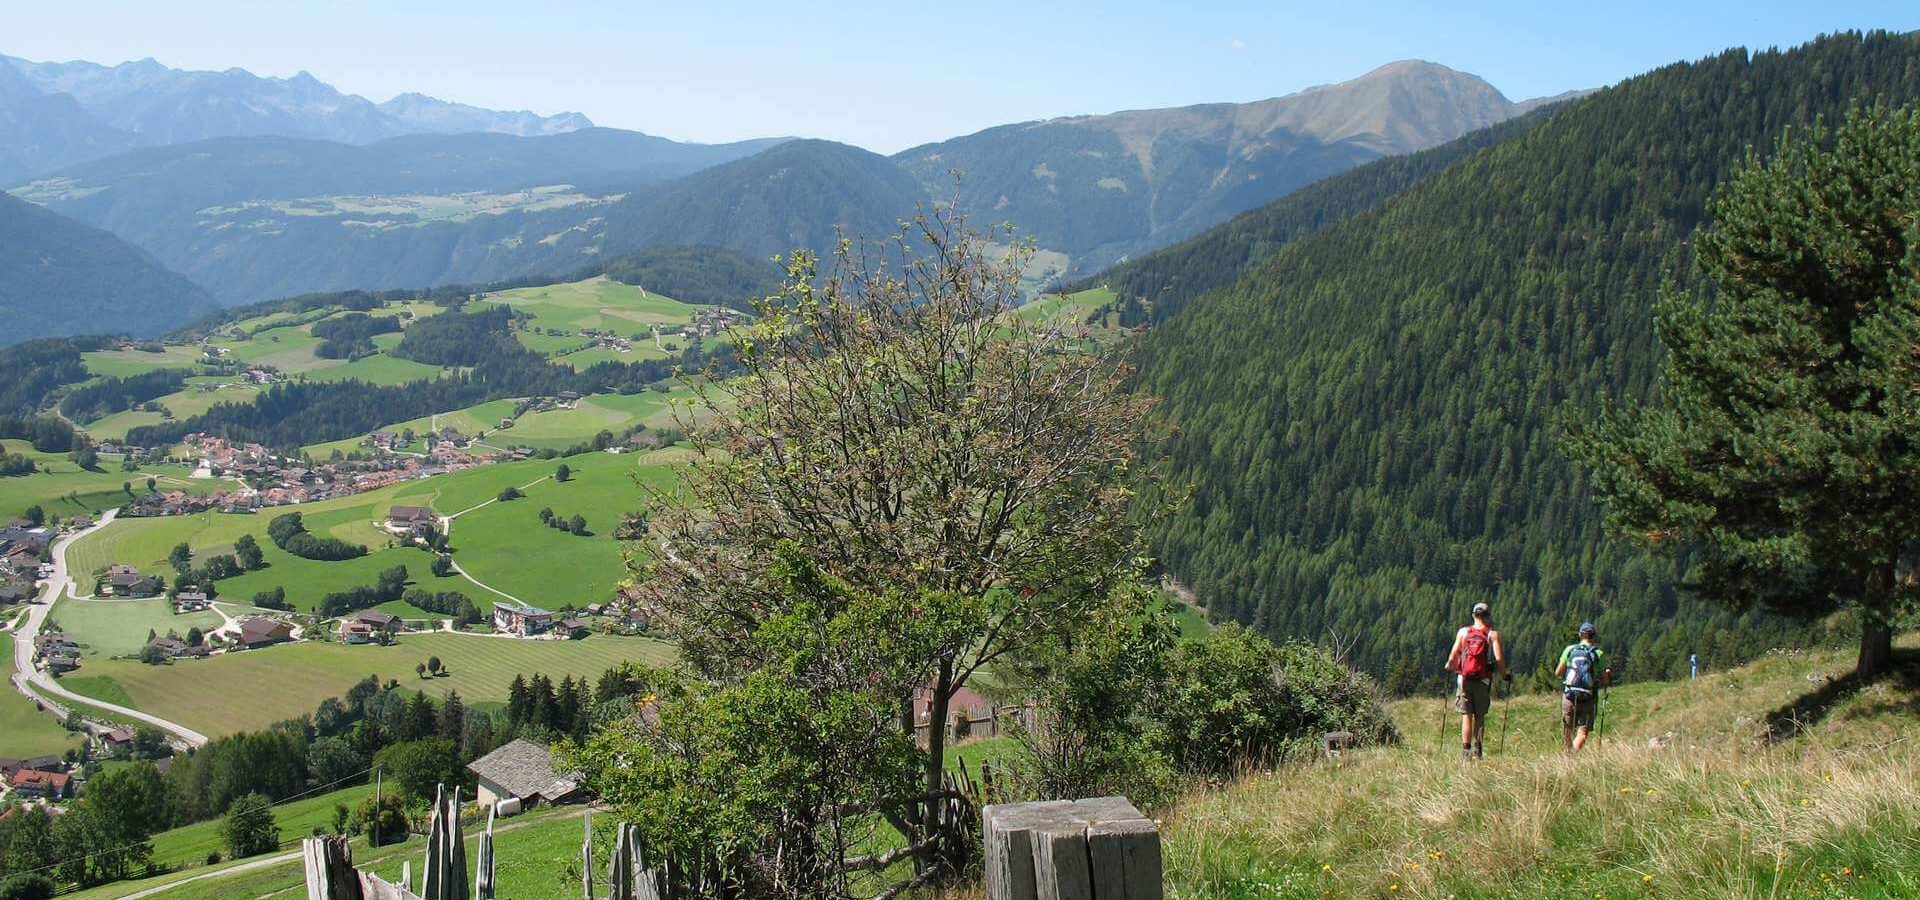 Natururlaub - Urlaub in der Natur / Kronplatz - Pustertal - Südtirol